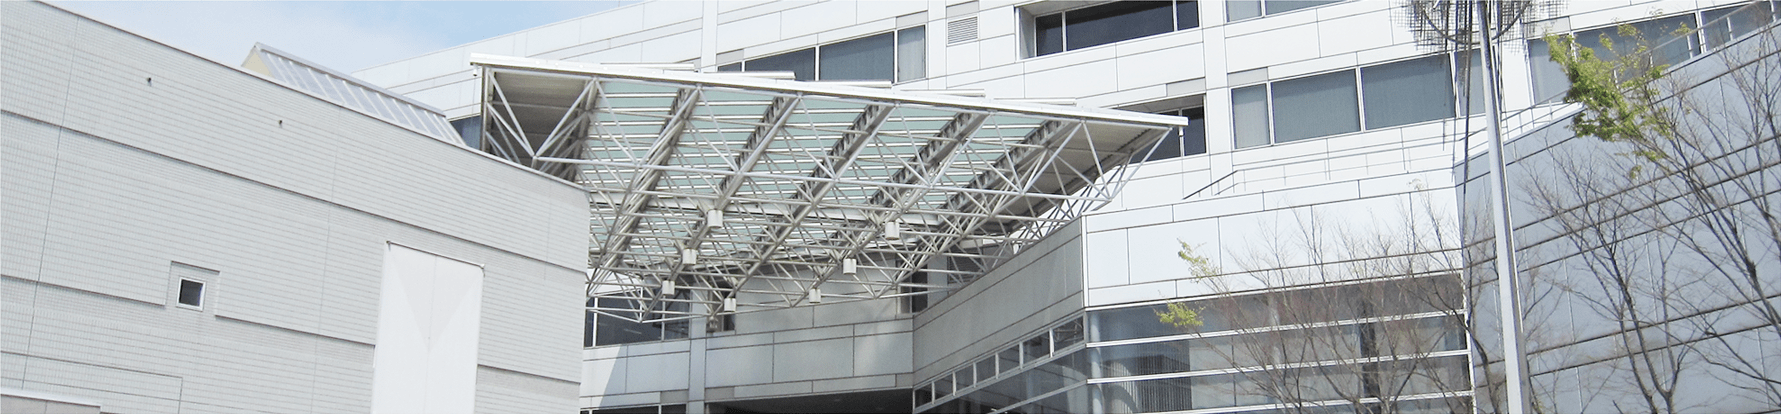 堺市産業振興センター